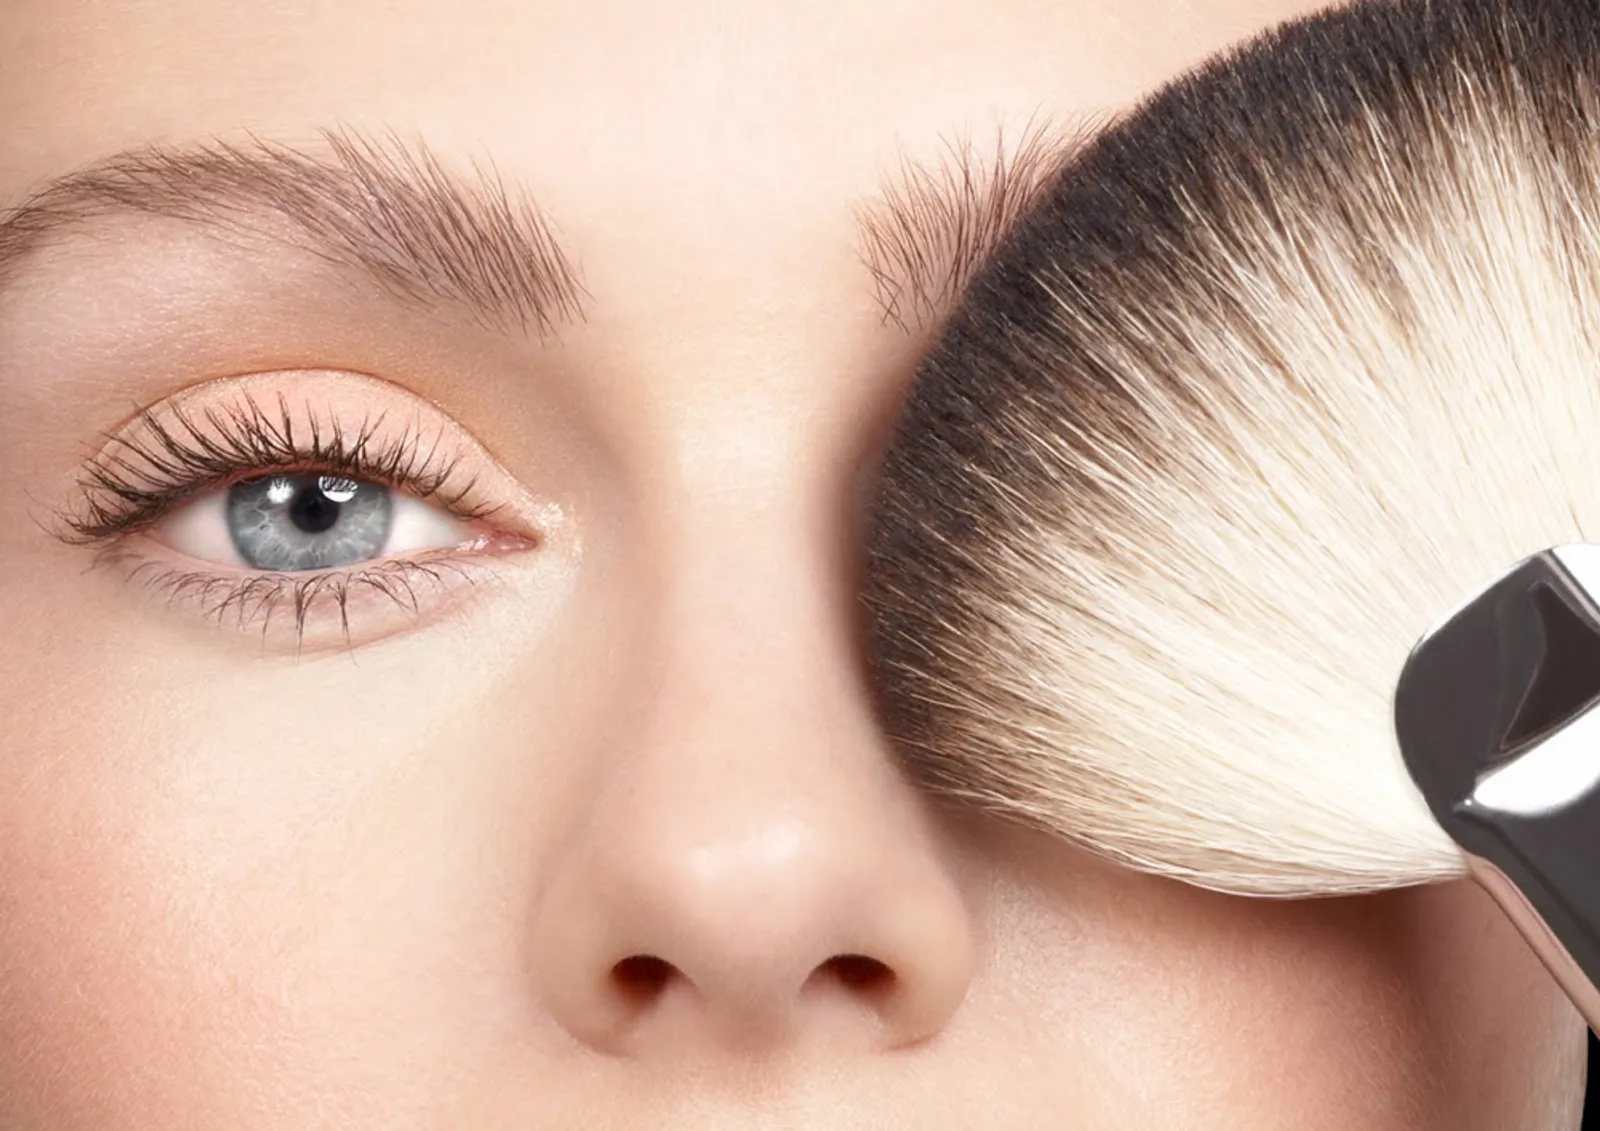 Tampil ala Selebriti dengan 5 Trik Makeup Mudah Ini